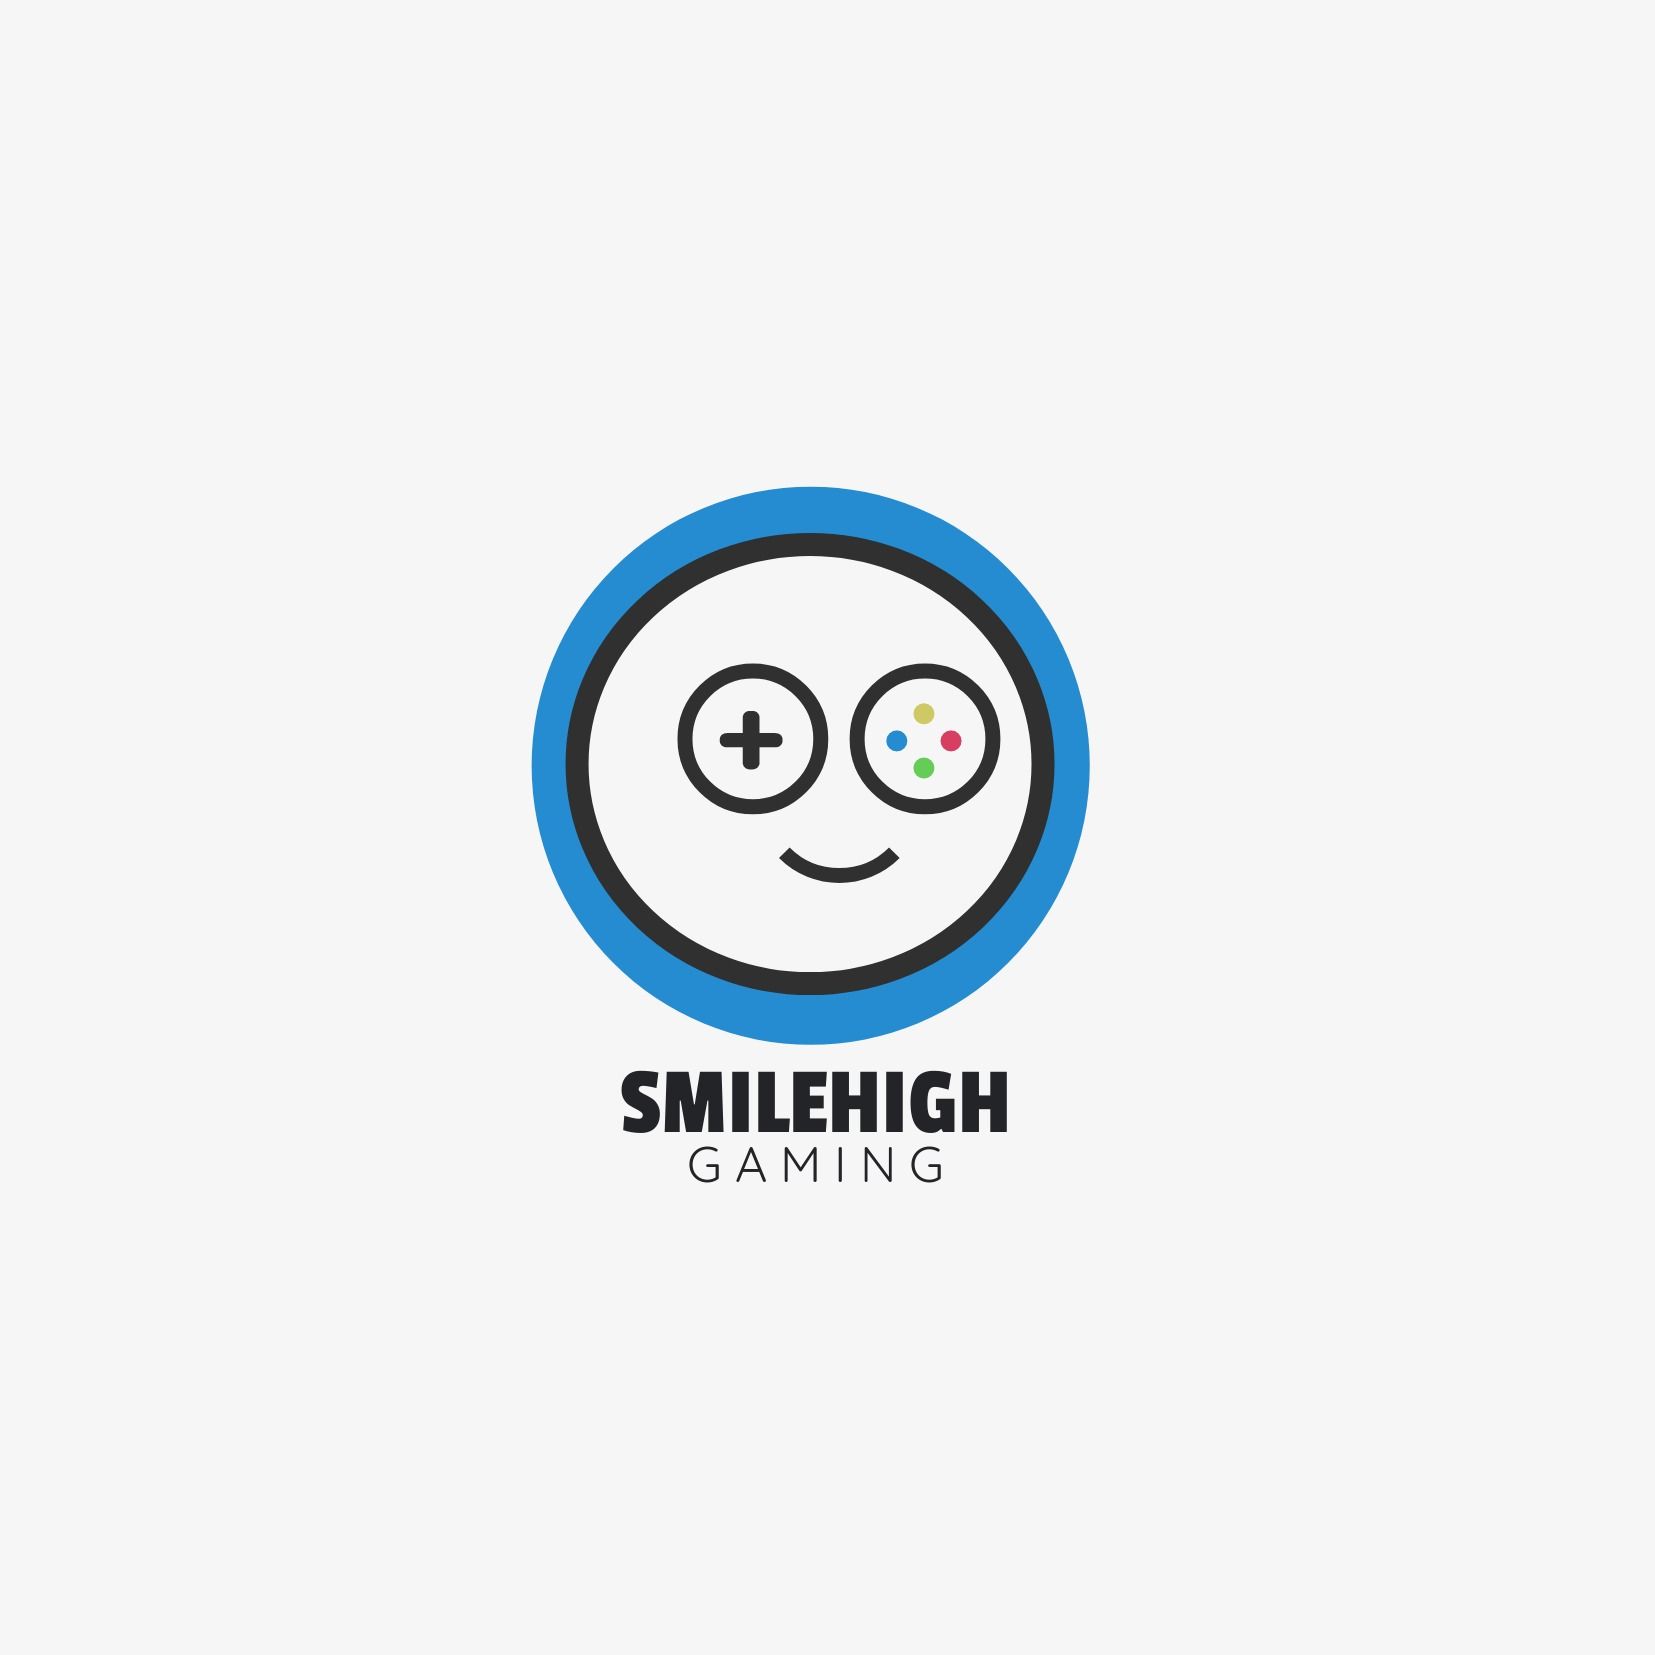 Logotipo de gamepad redondo abstracto que parece una cara sonriente y &#39;Smilehigh gaming&#39; como título - Comparación de las fuentes Passion 1 y Quick Sand - Imagen